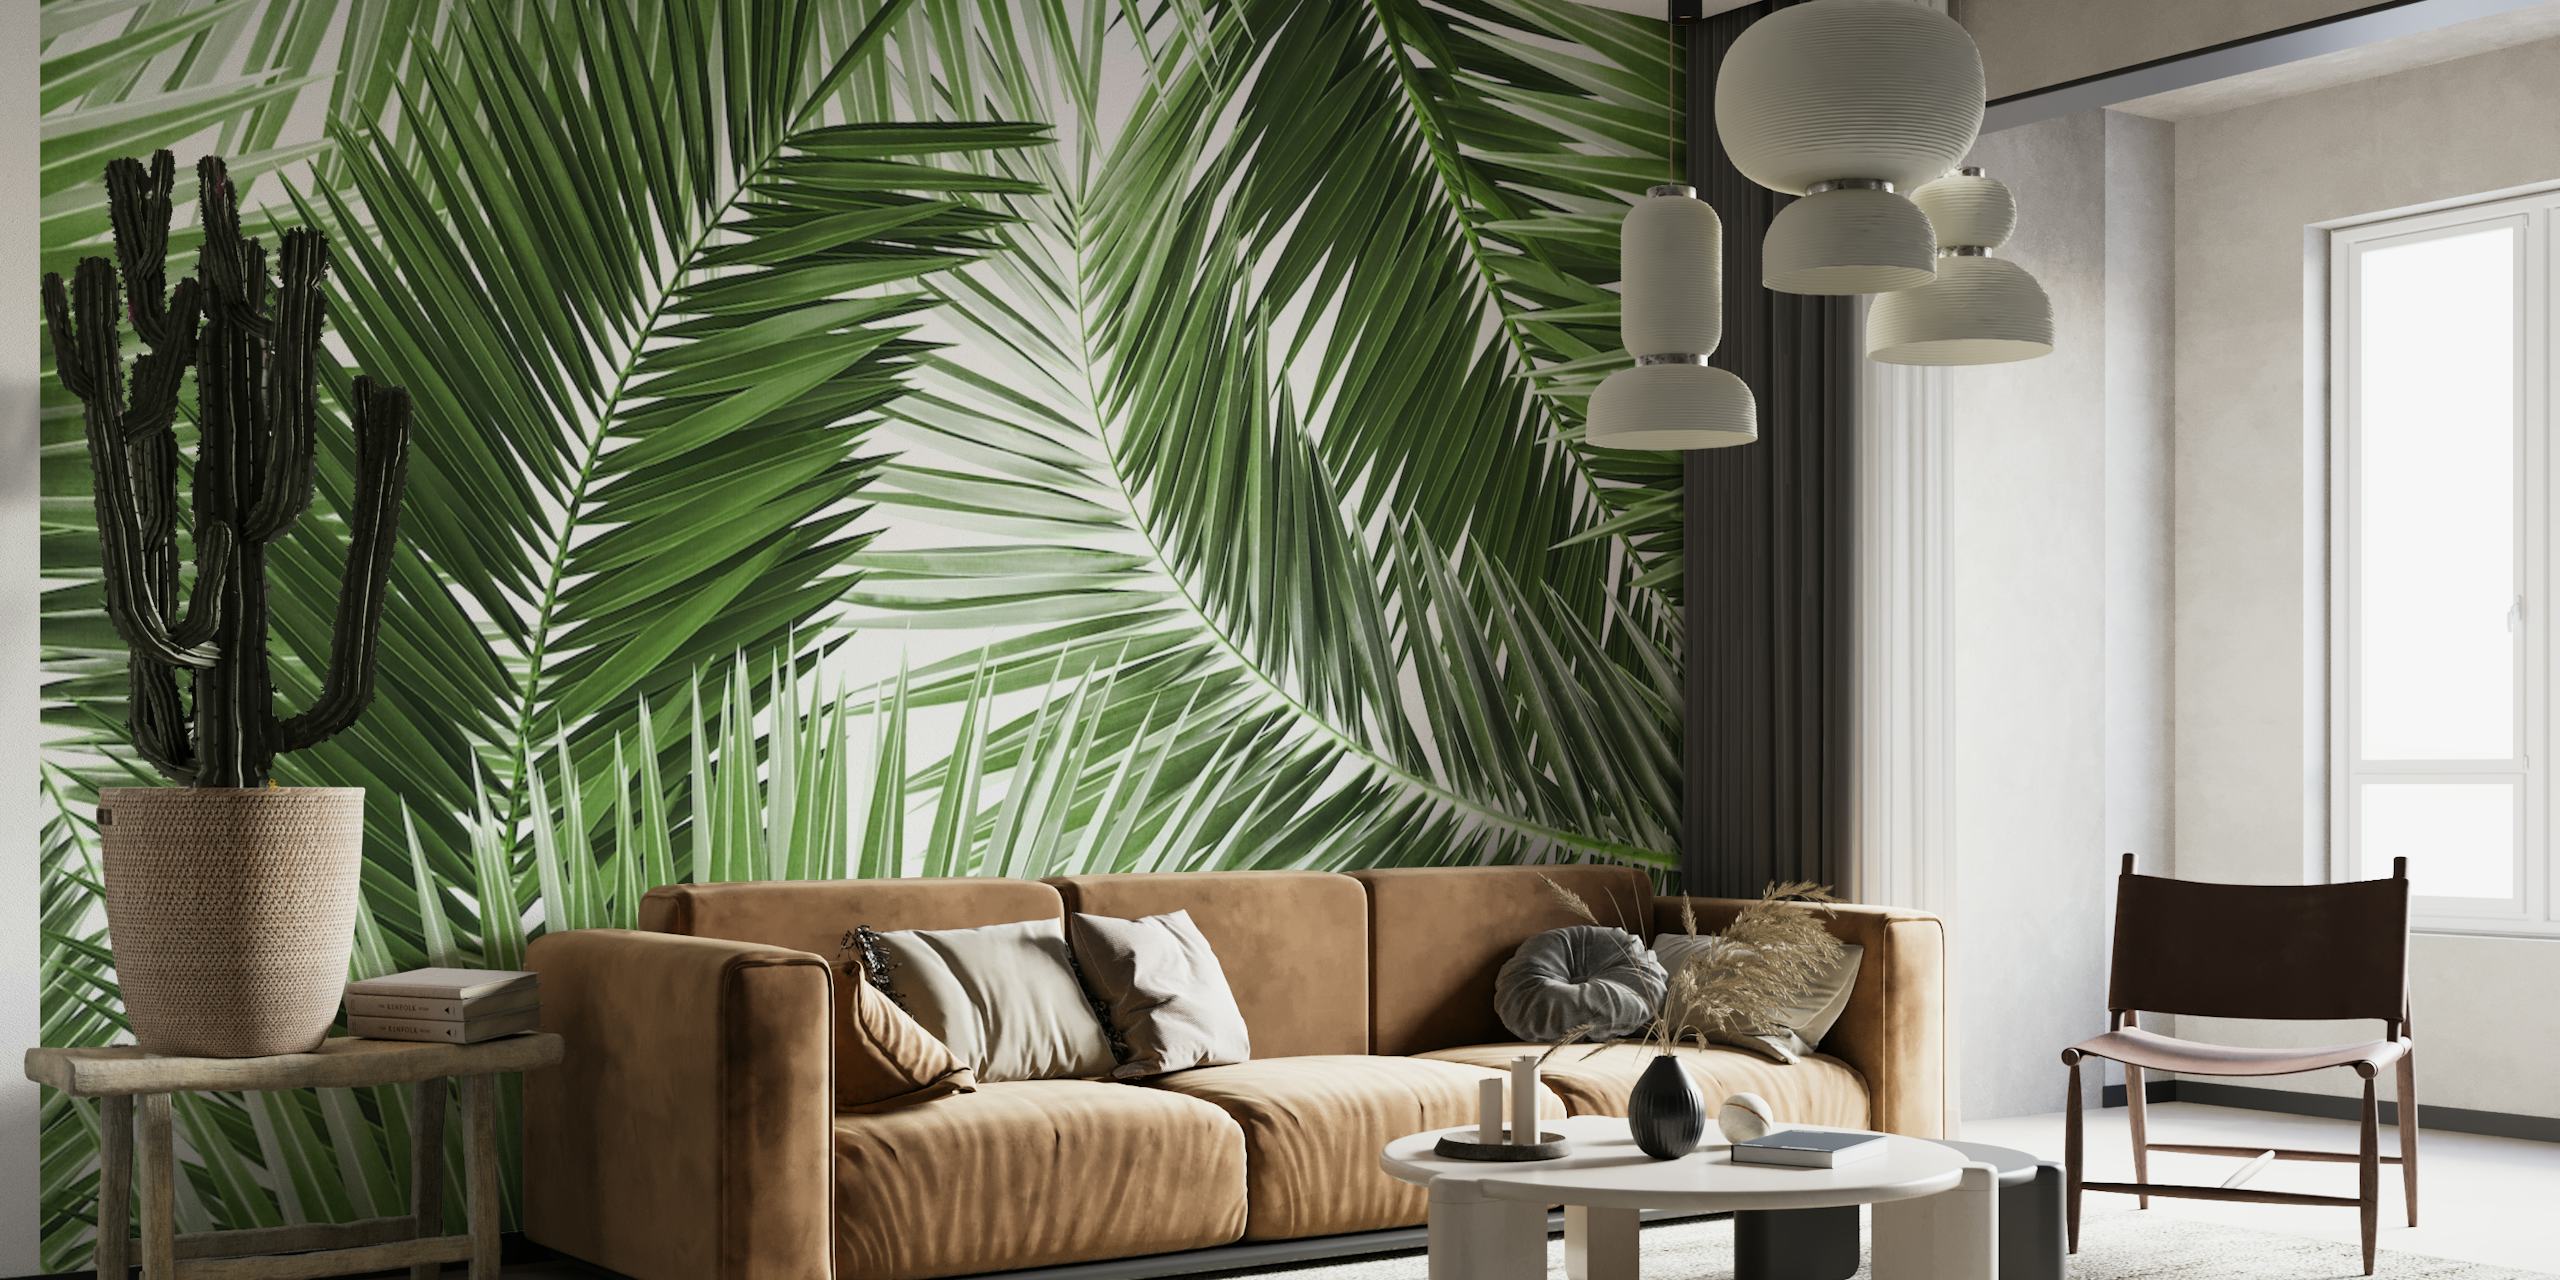 Fotomural vinílico de parede com padrão de folhas de palmeira verde exuberante para decoração de interiores